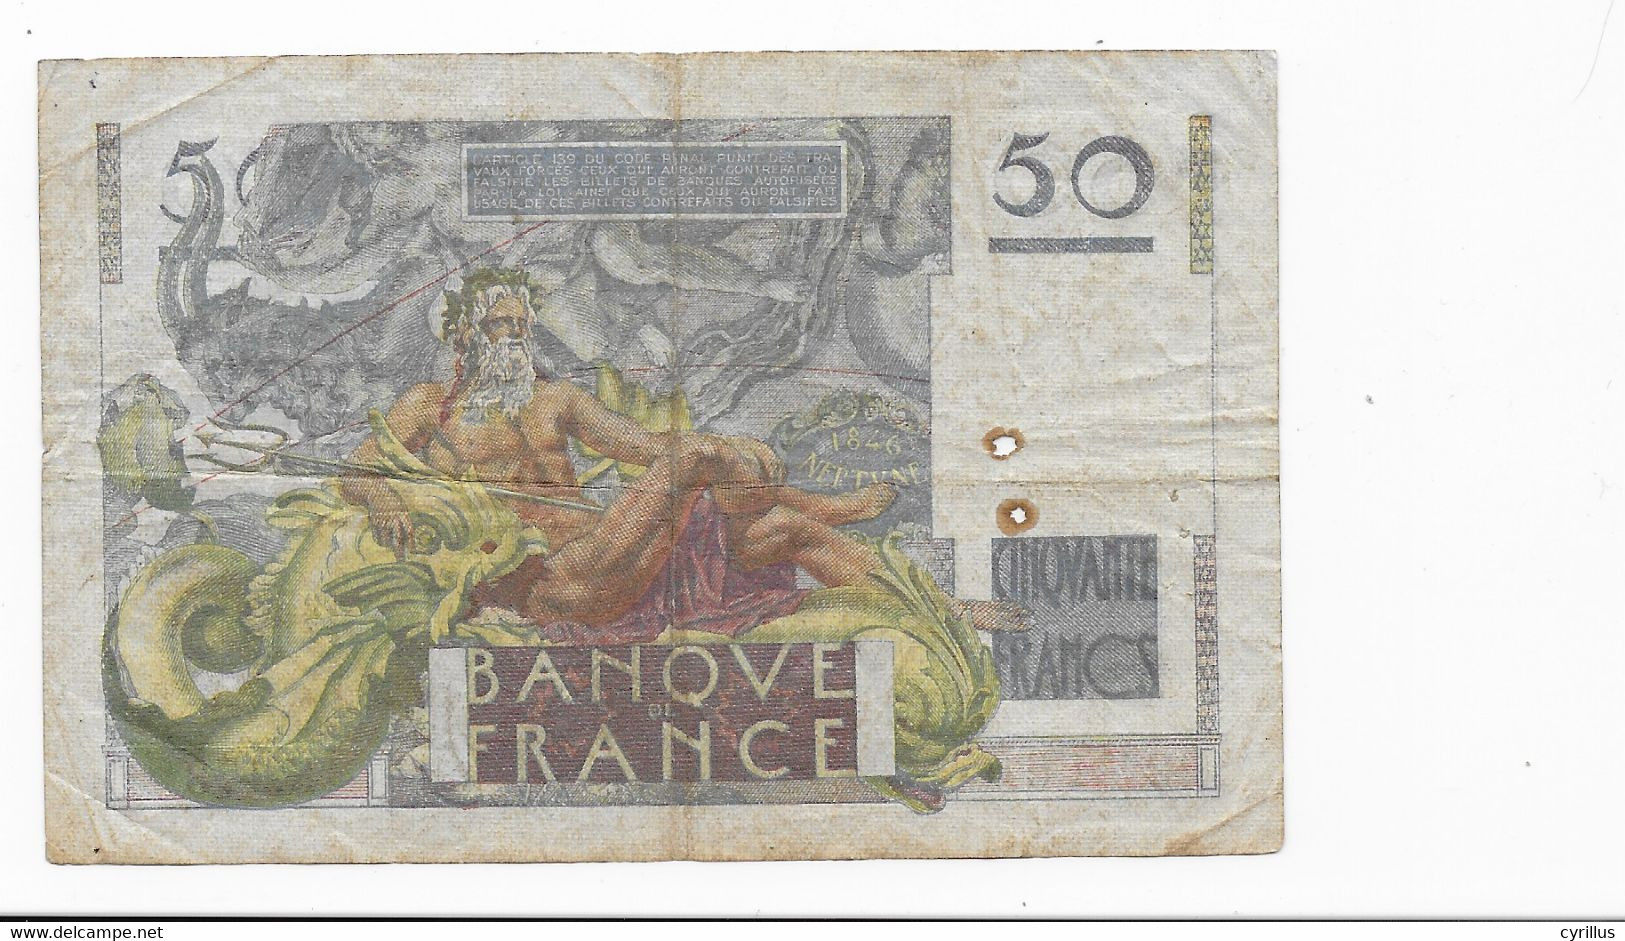 France - Billet De 50 Francs Le Verrier - E.1-2 1951.E - 50 F 1946-1951 ''Le Verrier''